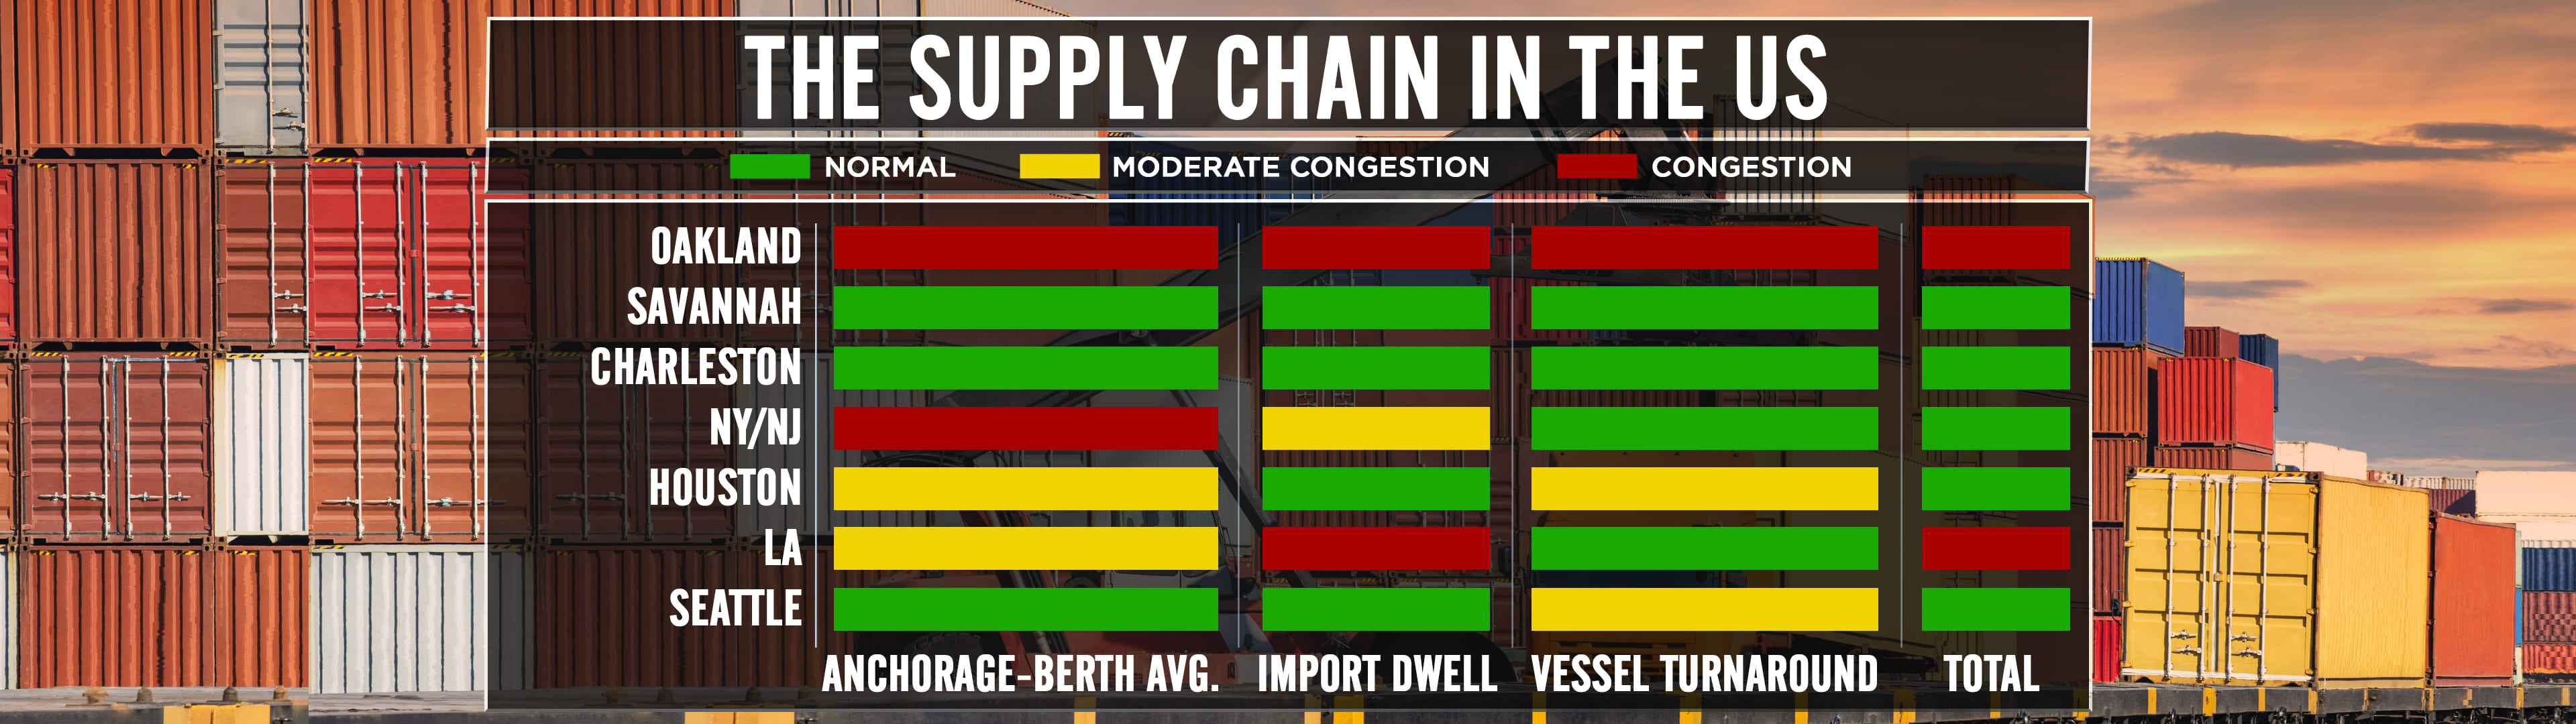 U.S. Supply Chain